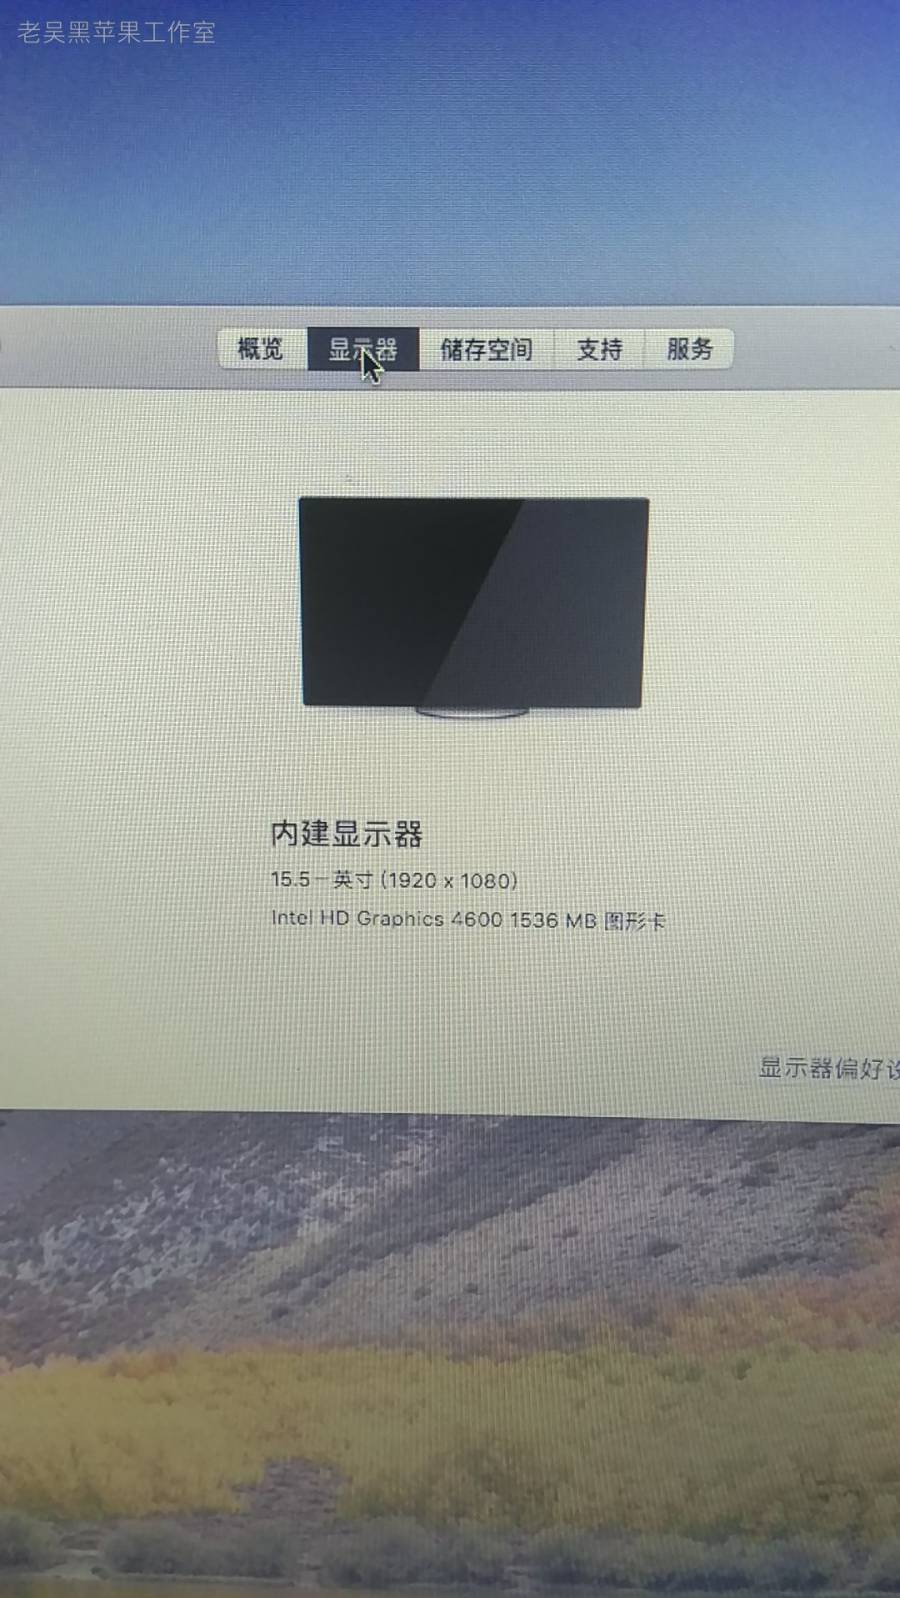 【EFI】雷神911 S2 i7-4710hq HD4600 GTX 860M macOS 10.13.6 黑苹果Hackintosh 引导下载